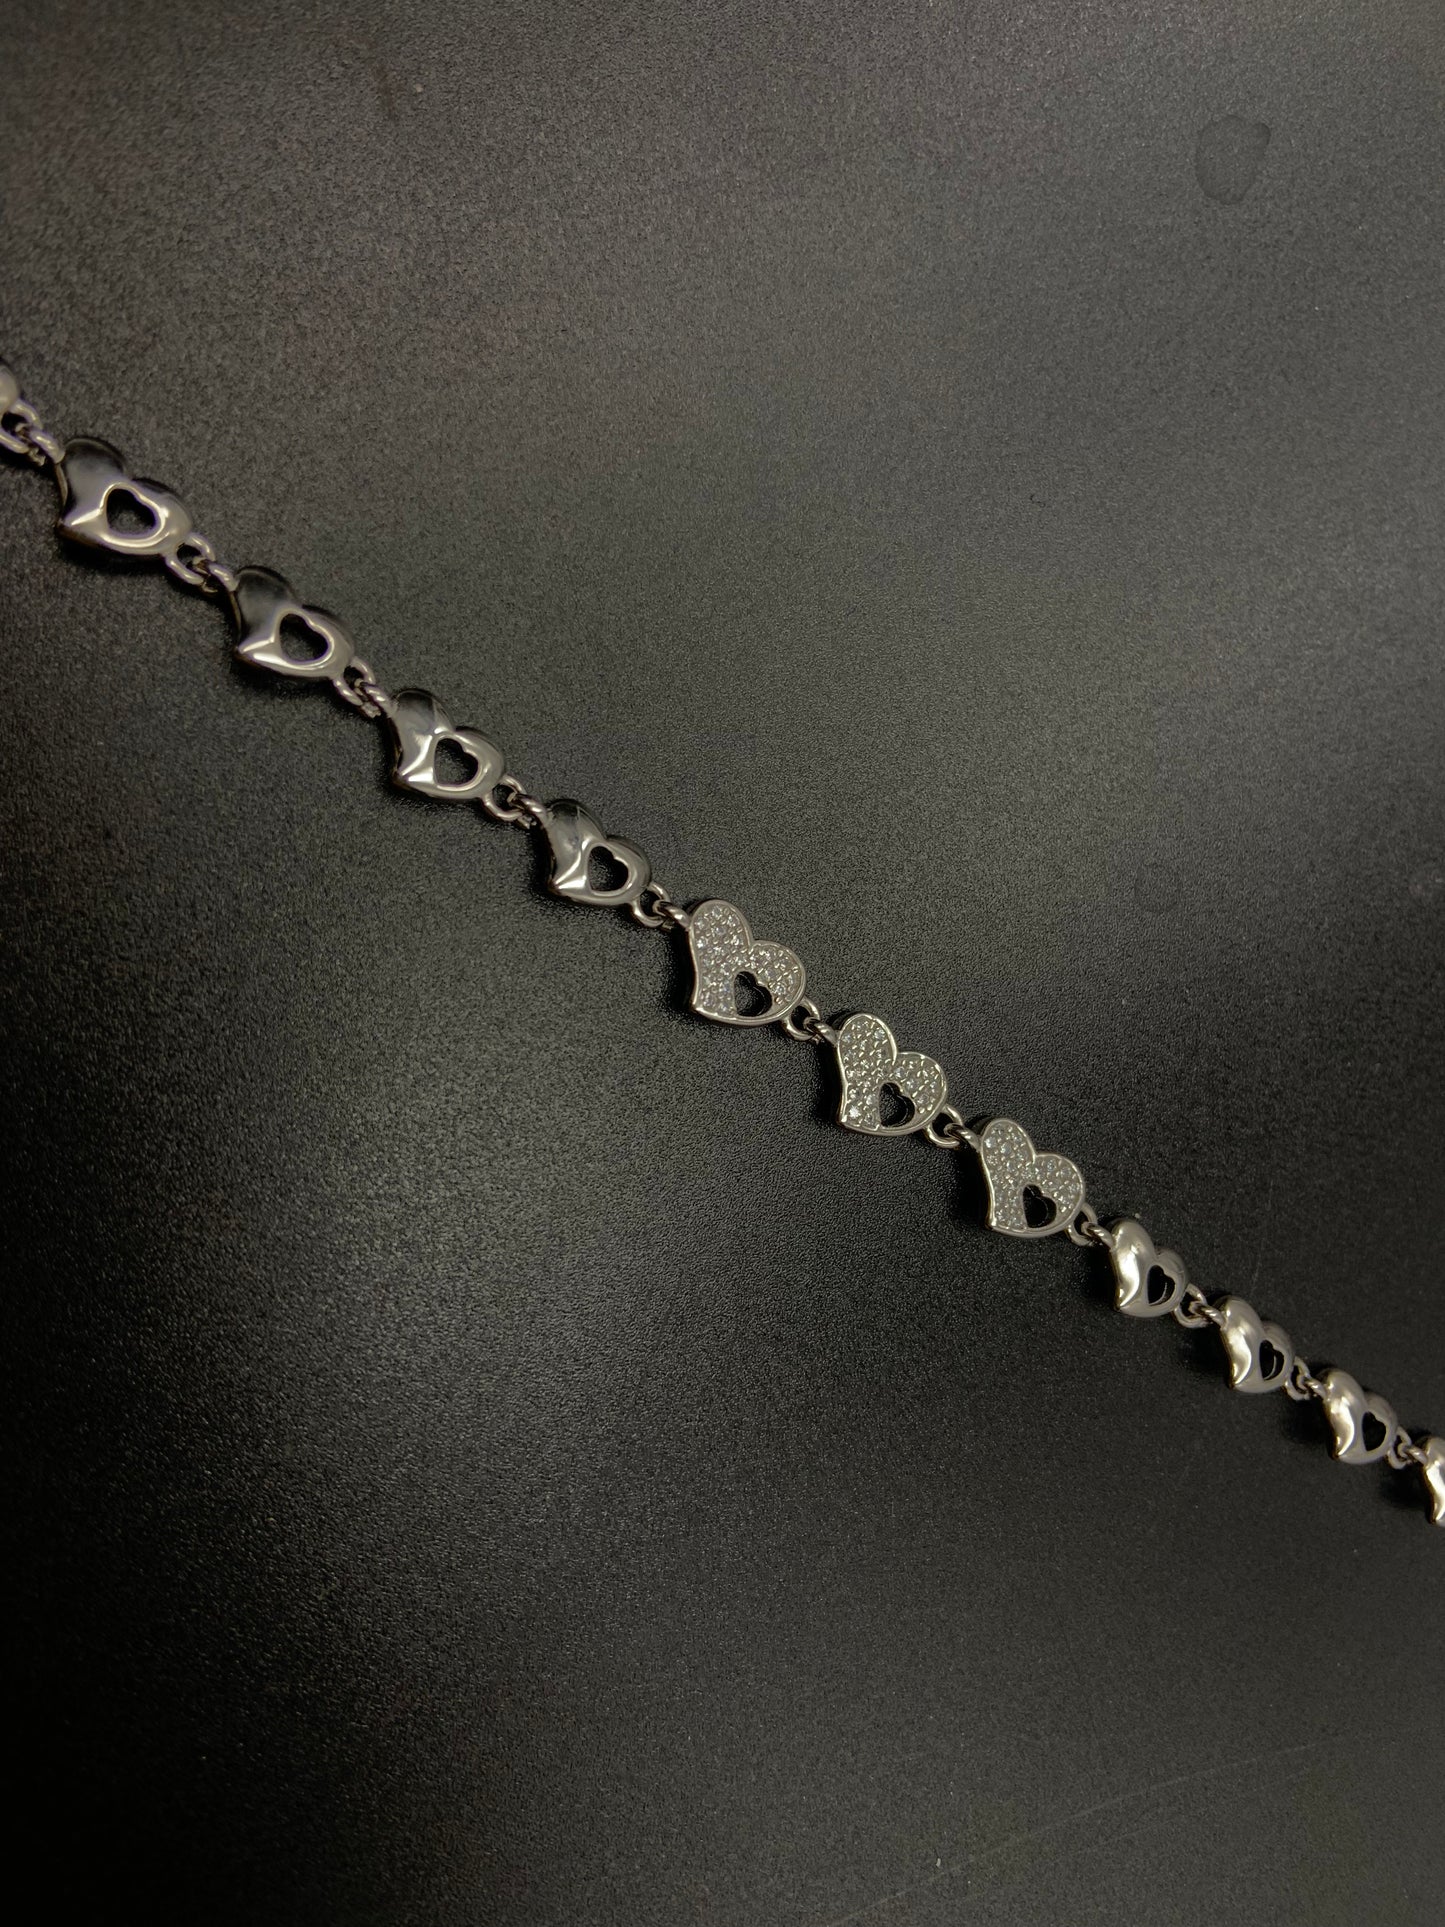 Silver Ladies Bracelet